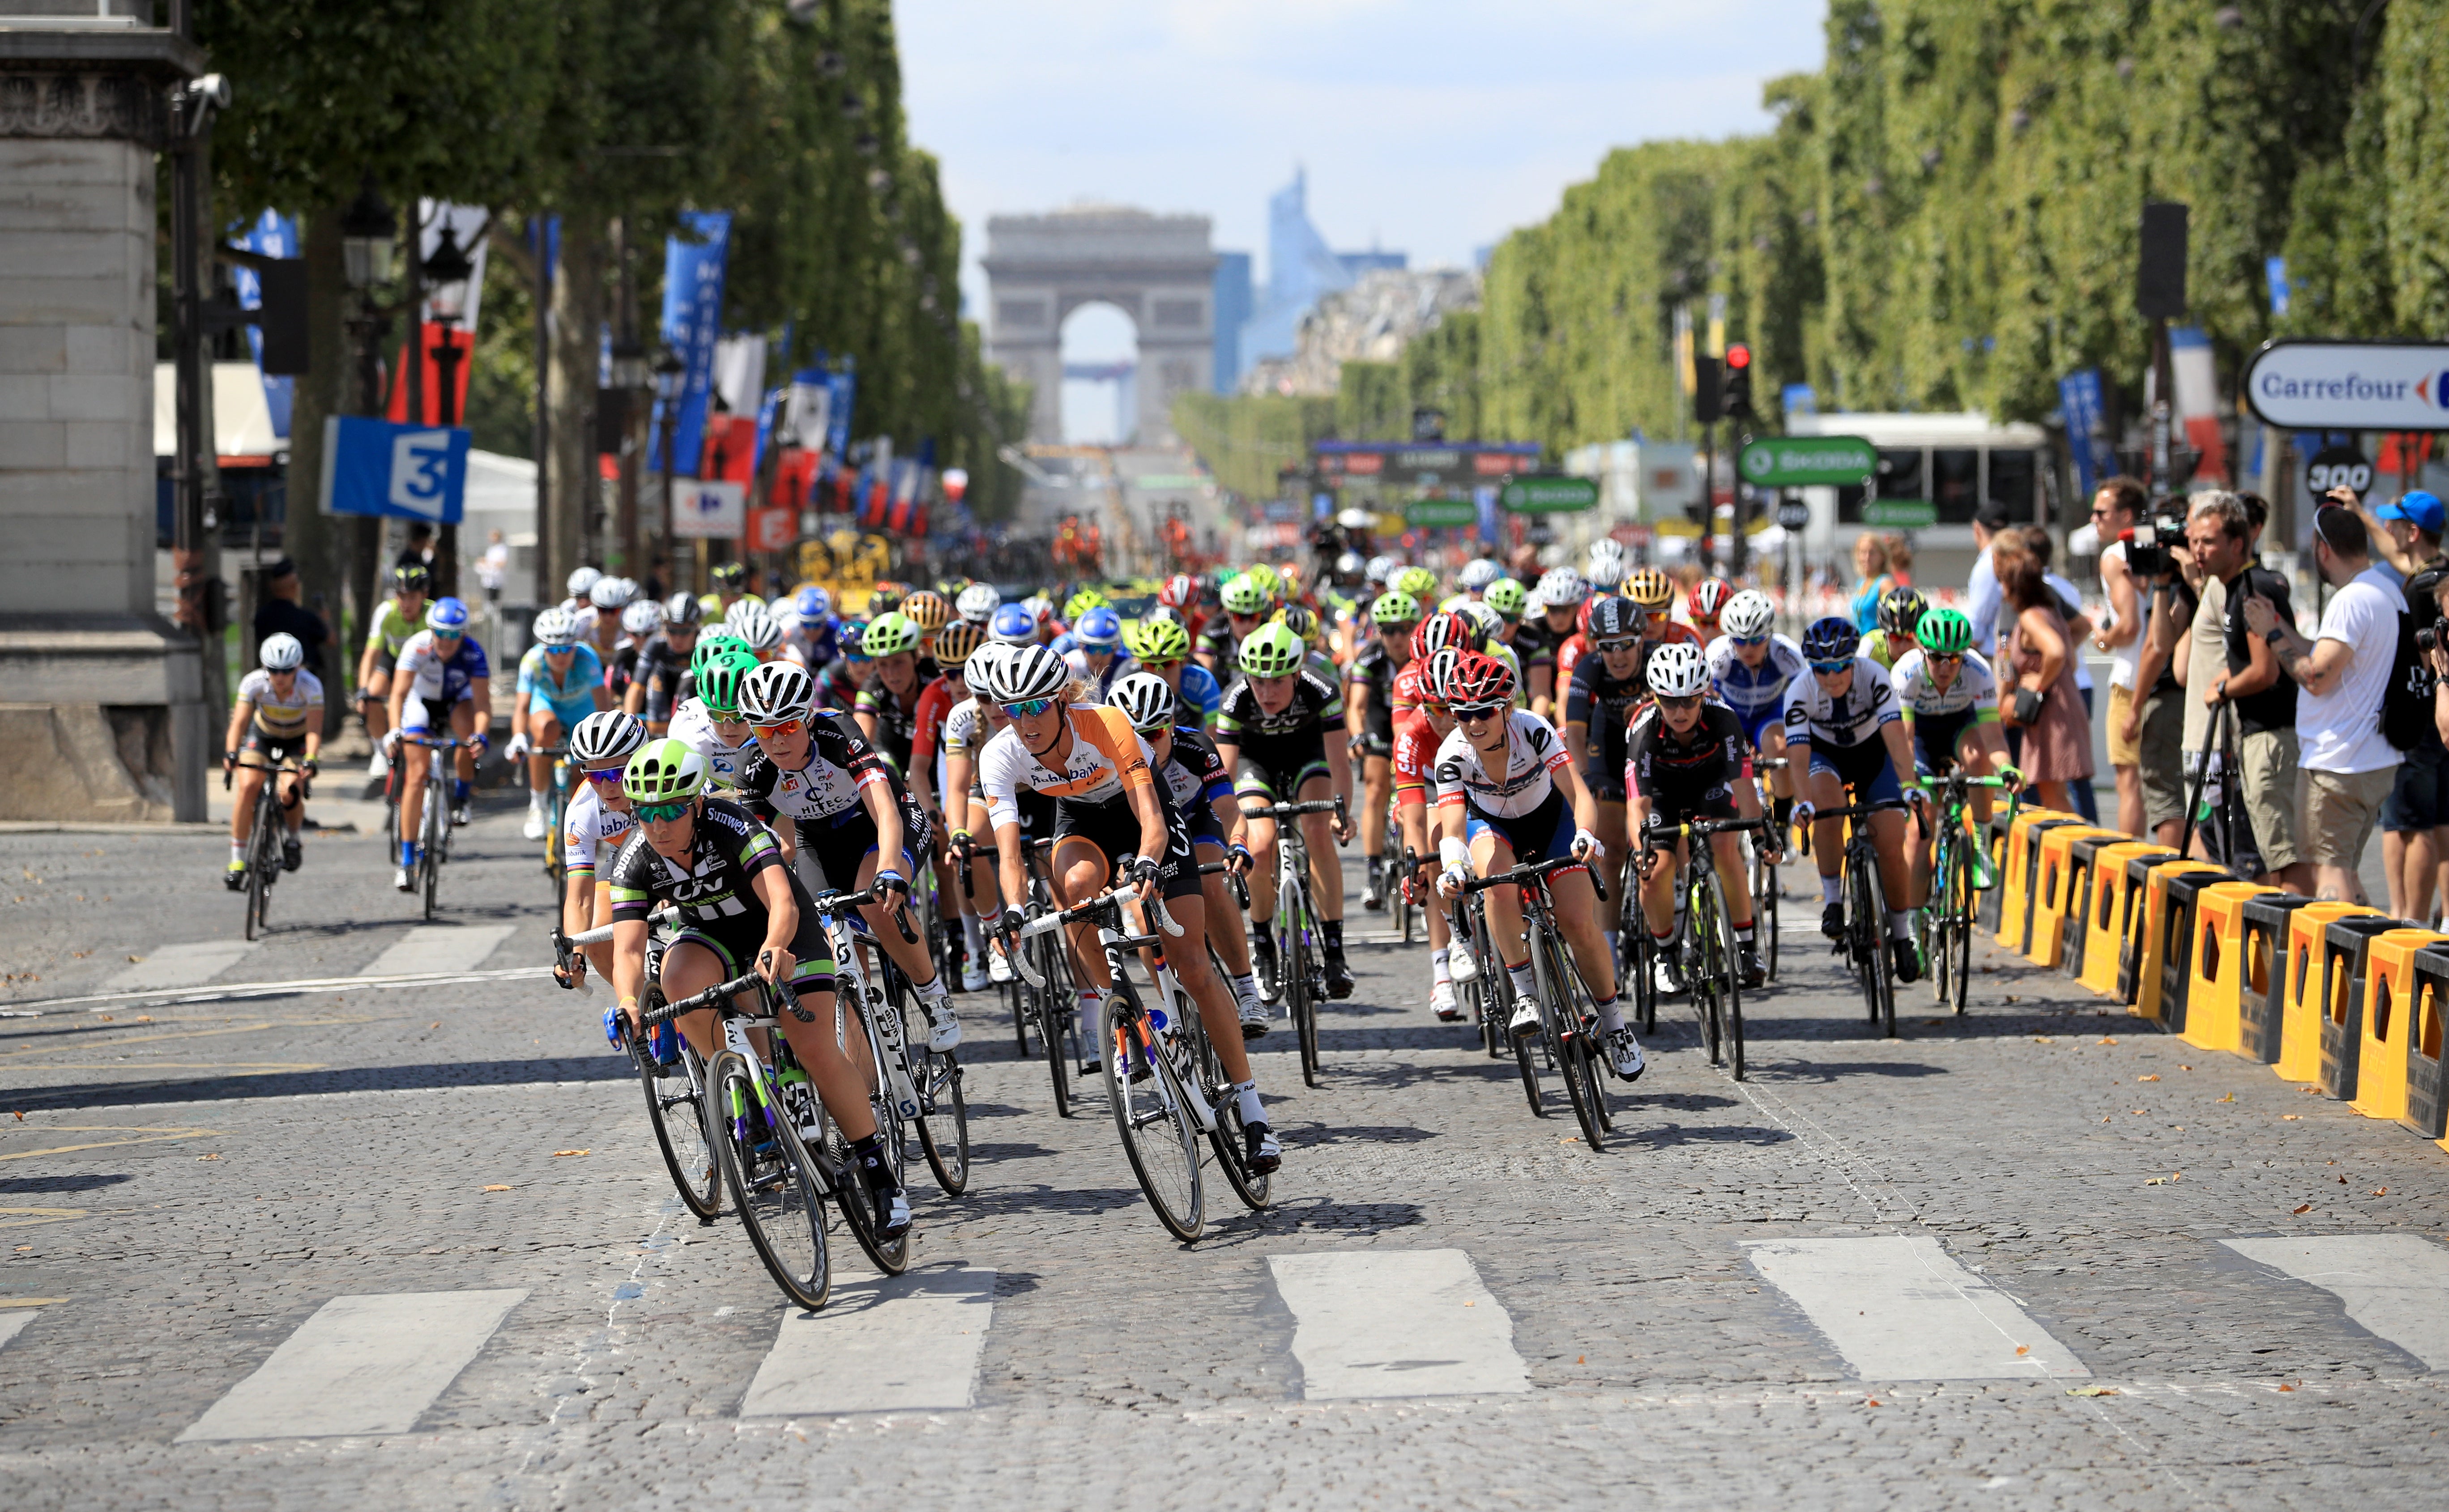 The week-long race begins in Paris on 24 July